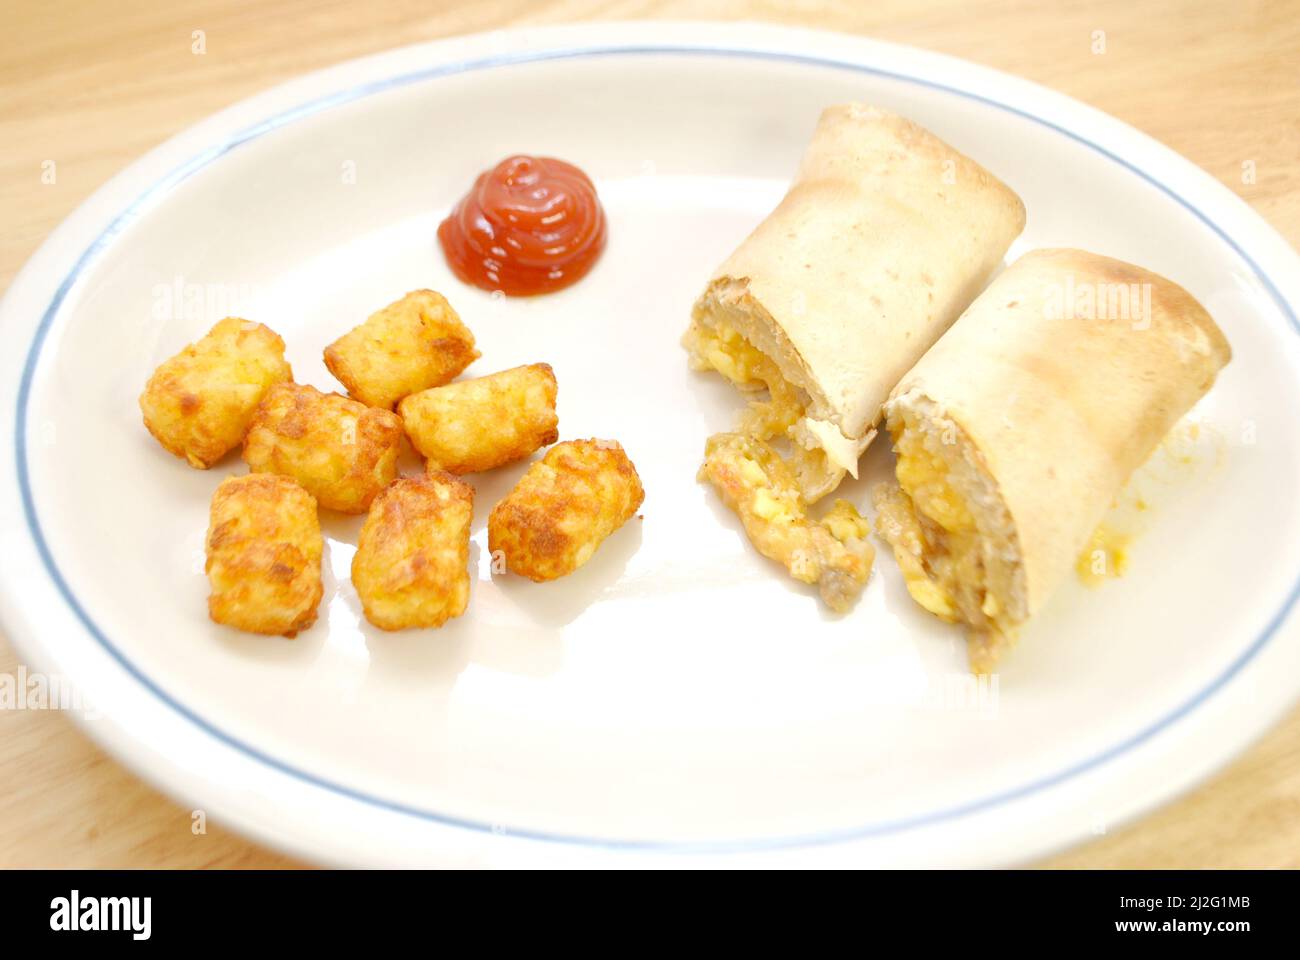 Frühstück Burrito und Tater Tots als schnelle Mahlzeit Stockfoto